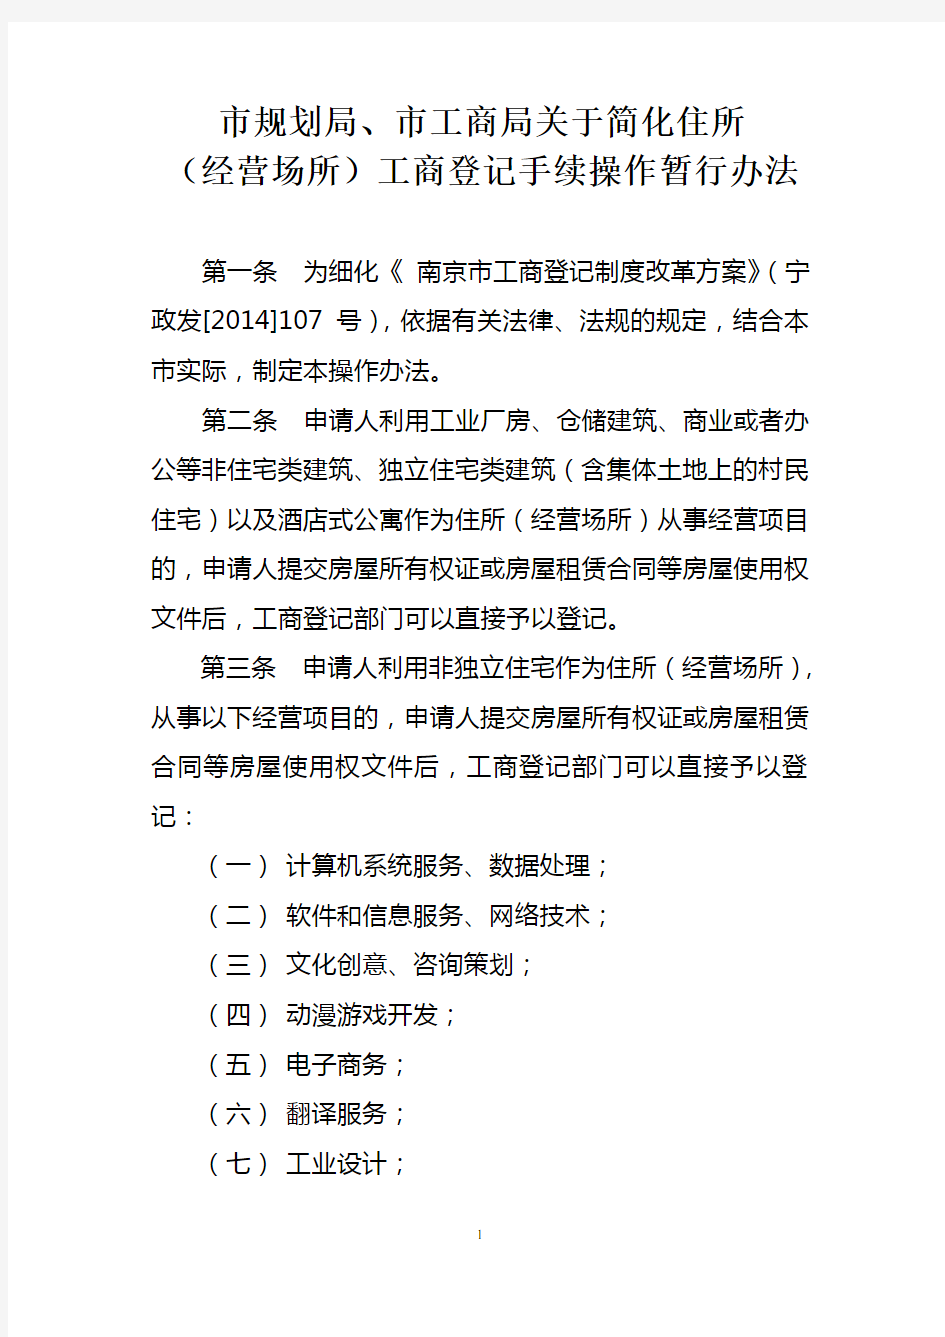 南京八大行业住宅可工商注册简化住所(经营场所)工商登记手续操作暂行办法